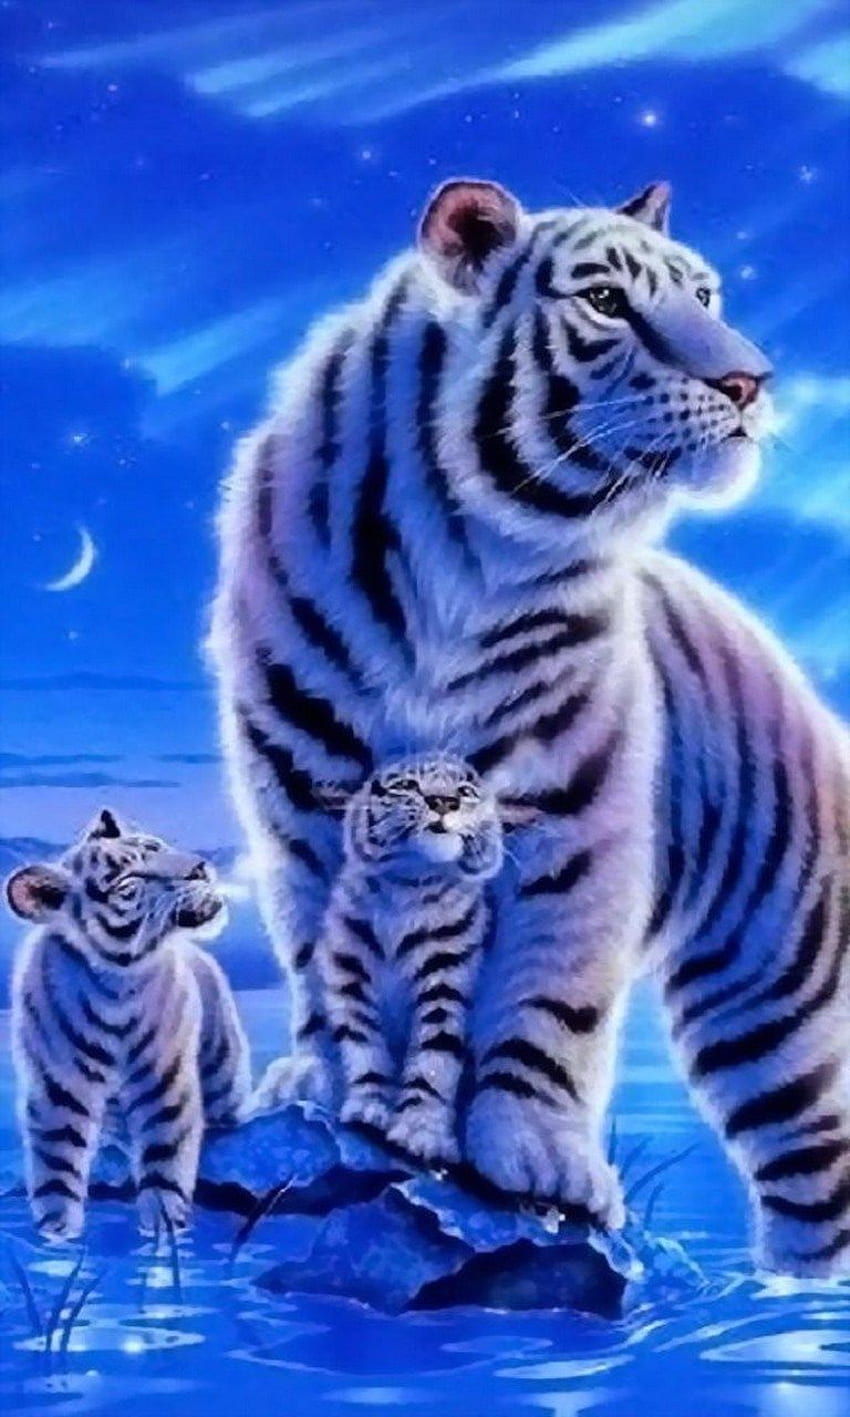 Cute Tiger and Cub Wallpaper  My Original Wallpaper